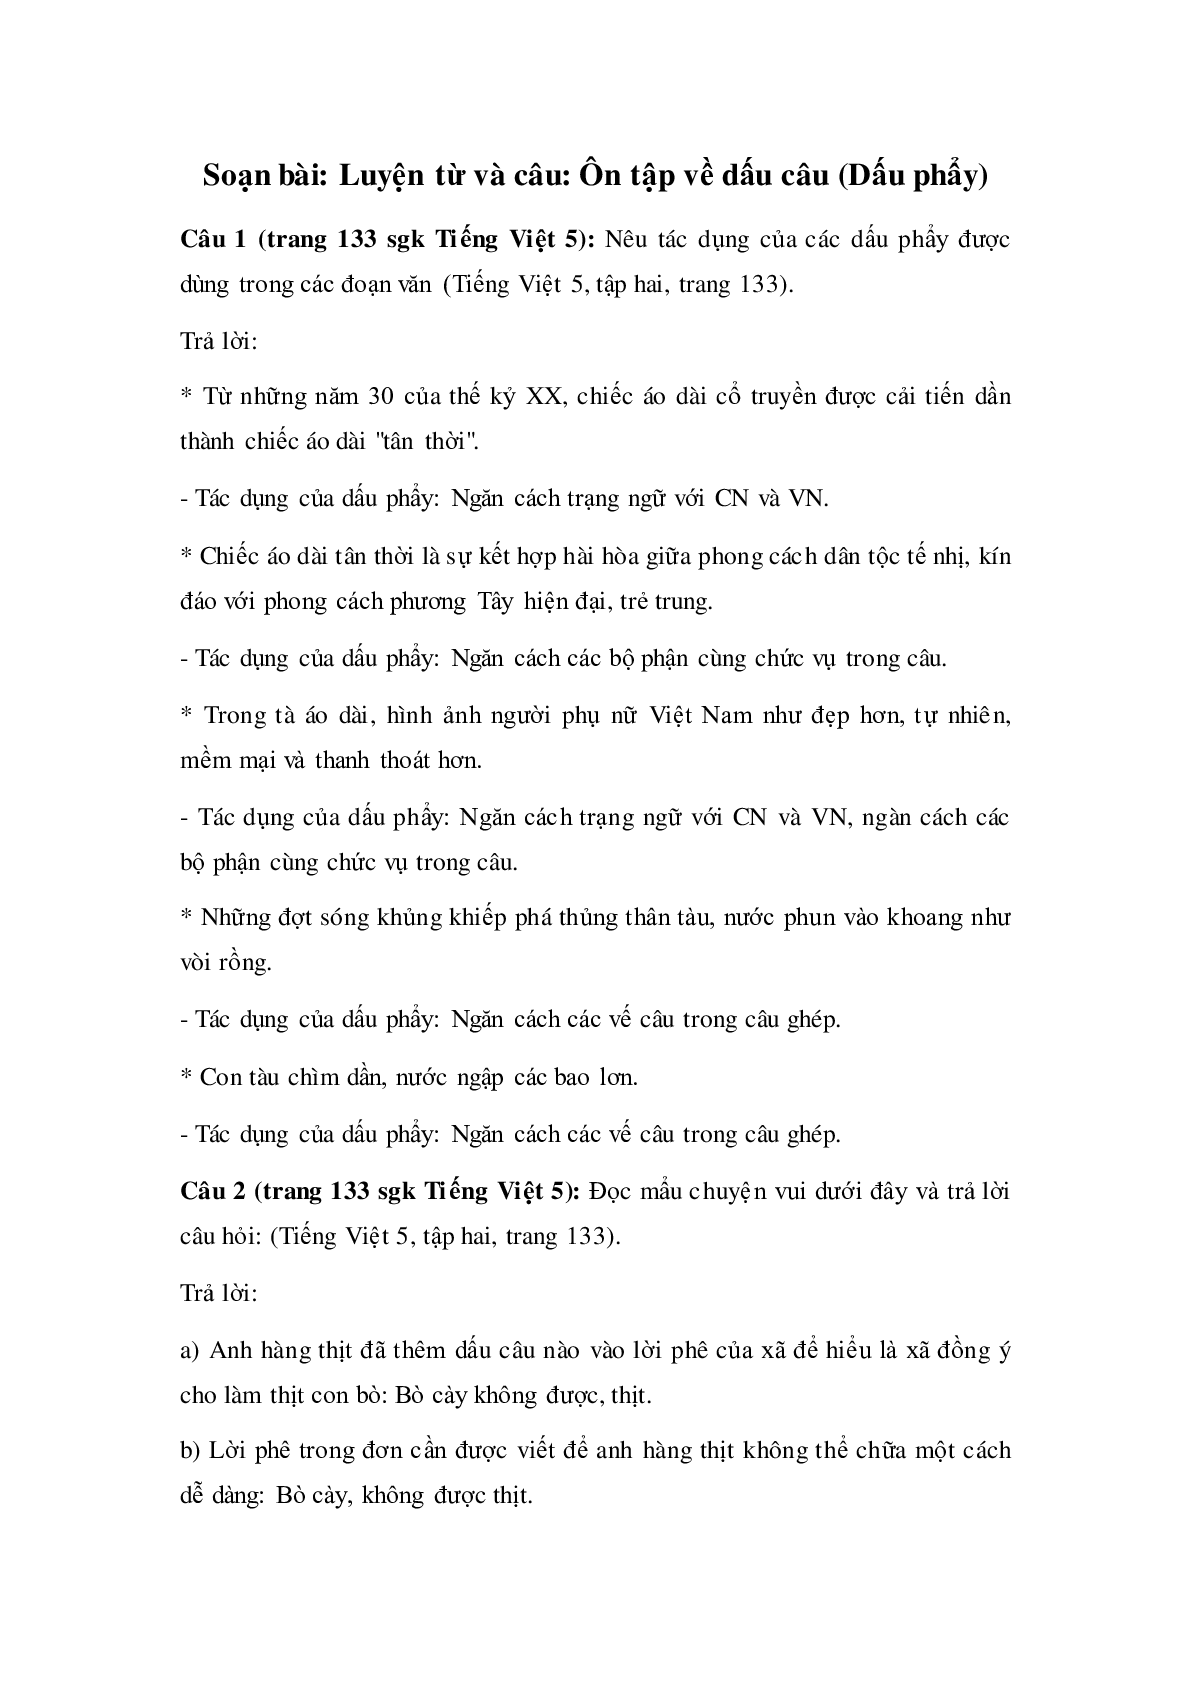 Soạn Tiếng Việt lớp 5:Luyện từ và câu: Ôn tập về dấu câu (Dấu phẩy) mới nhất (trang 1)